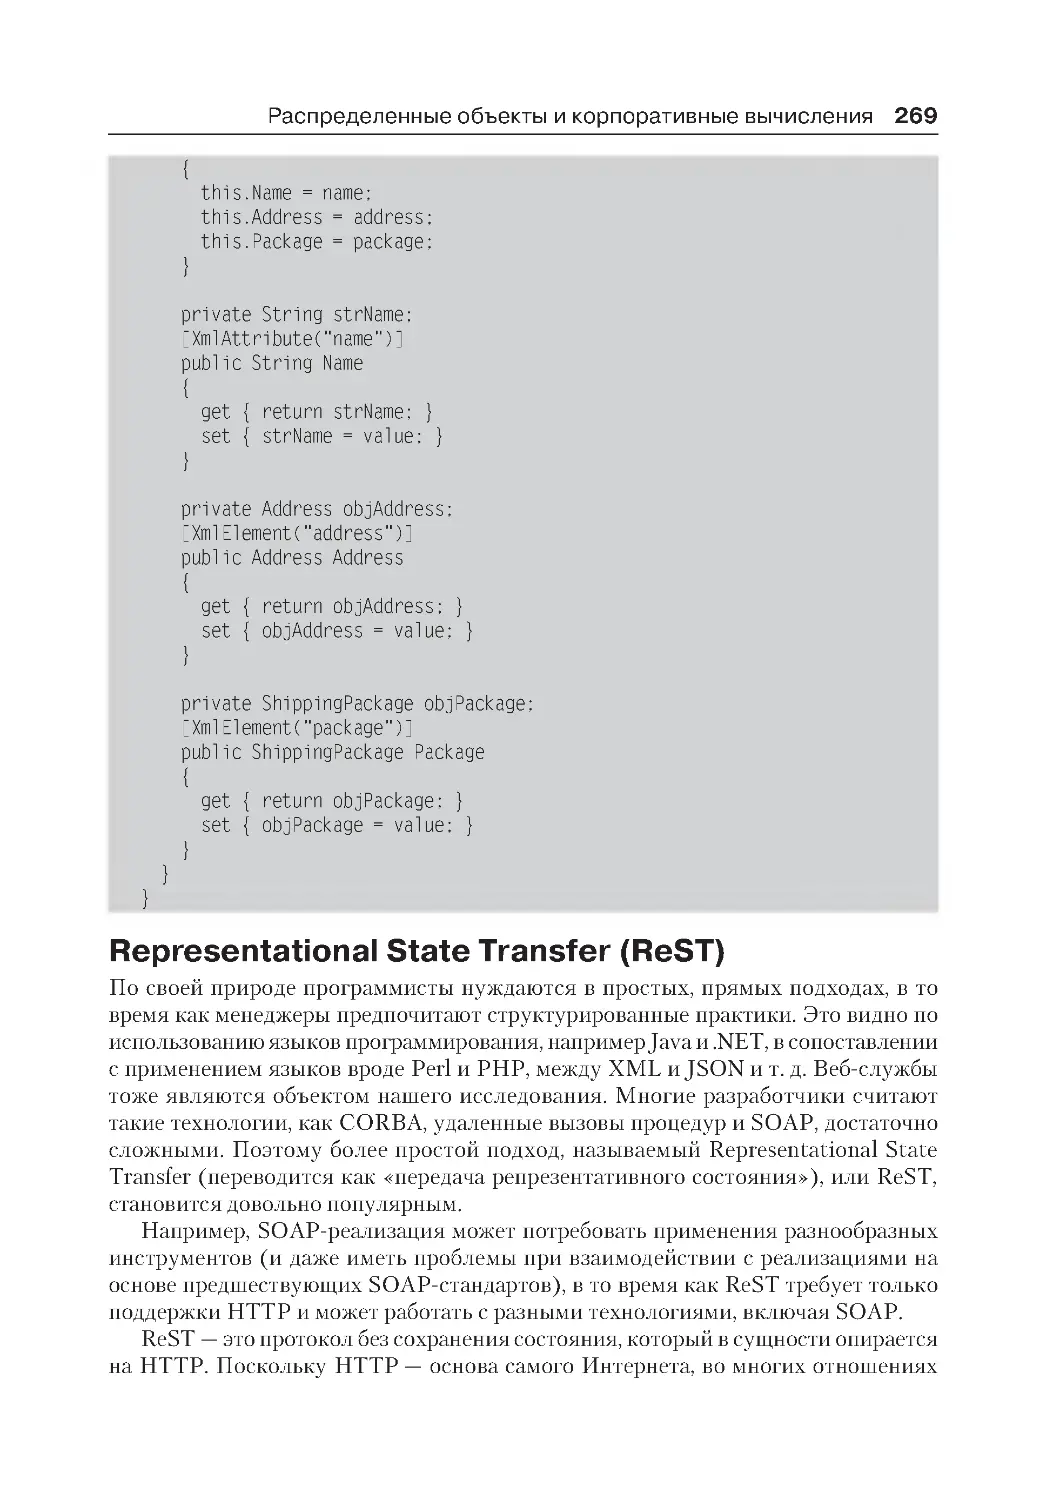 ﻿Representational State Transfer øReST